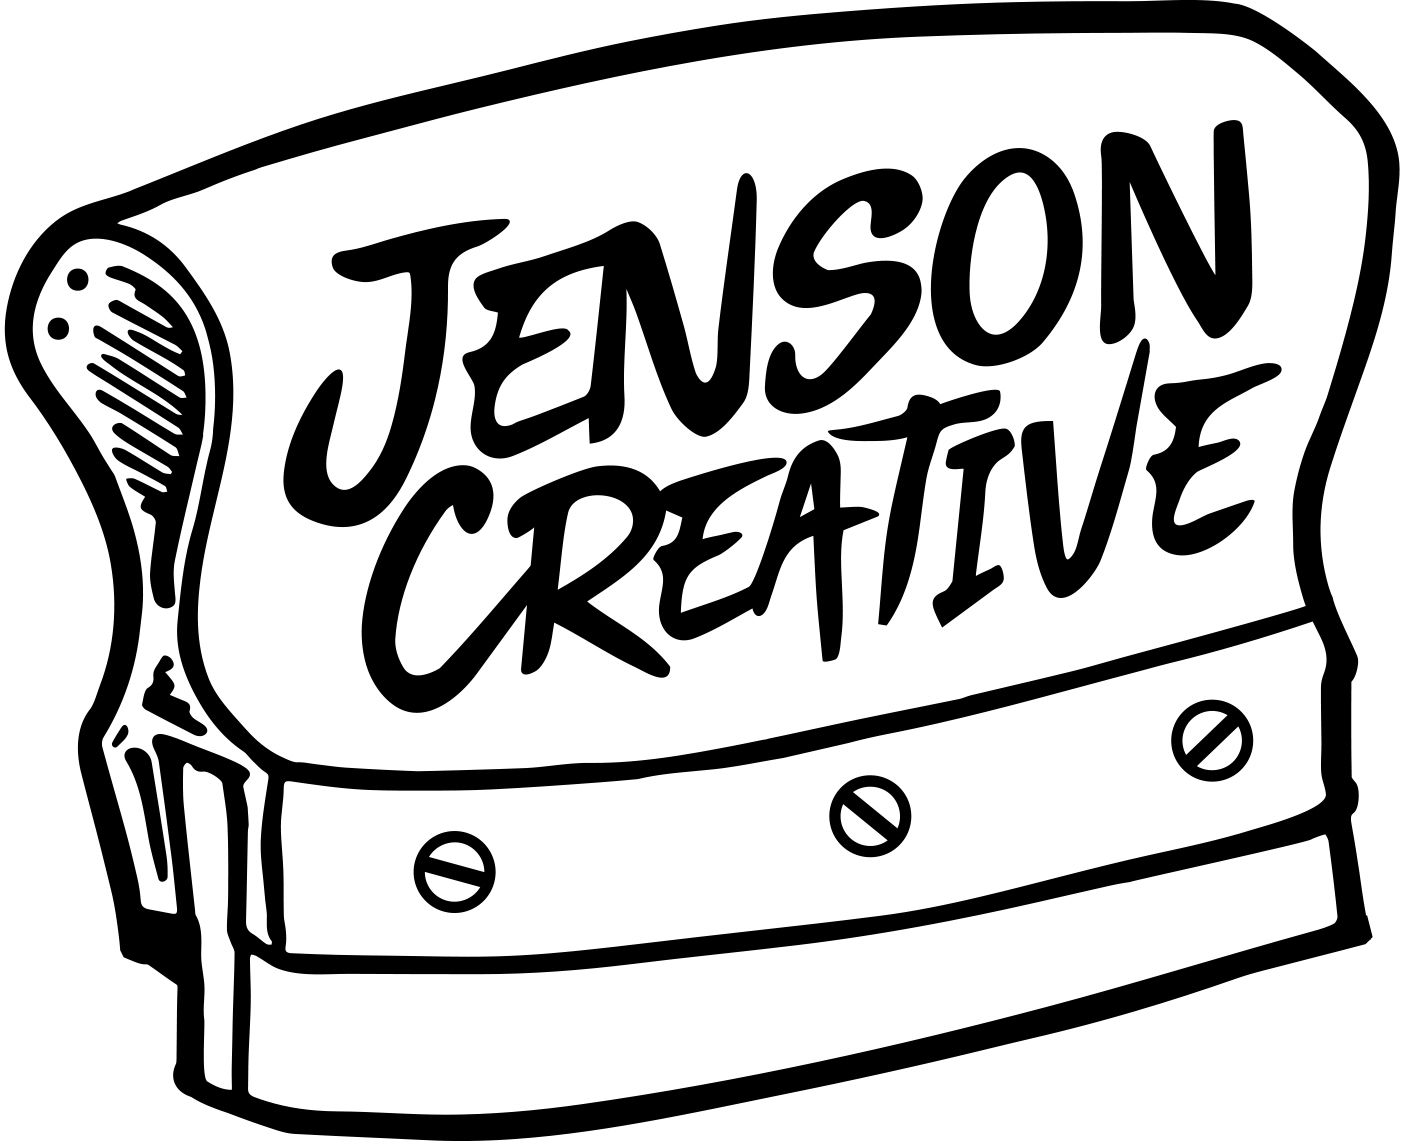 JENSON CREATIVE